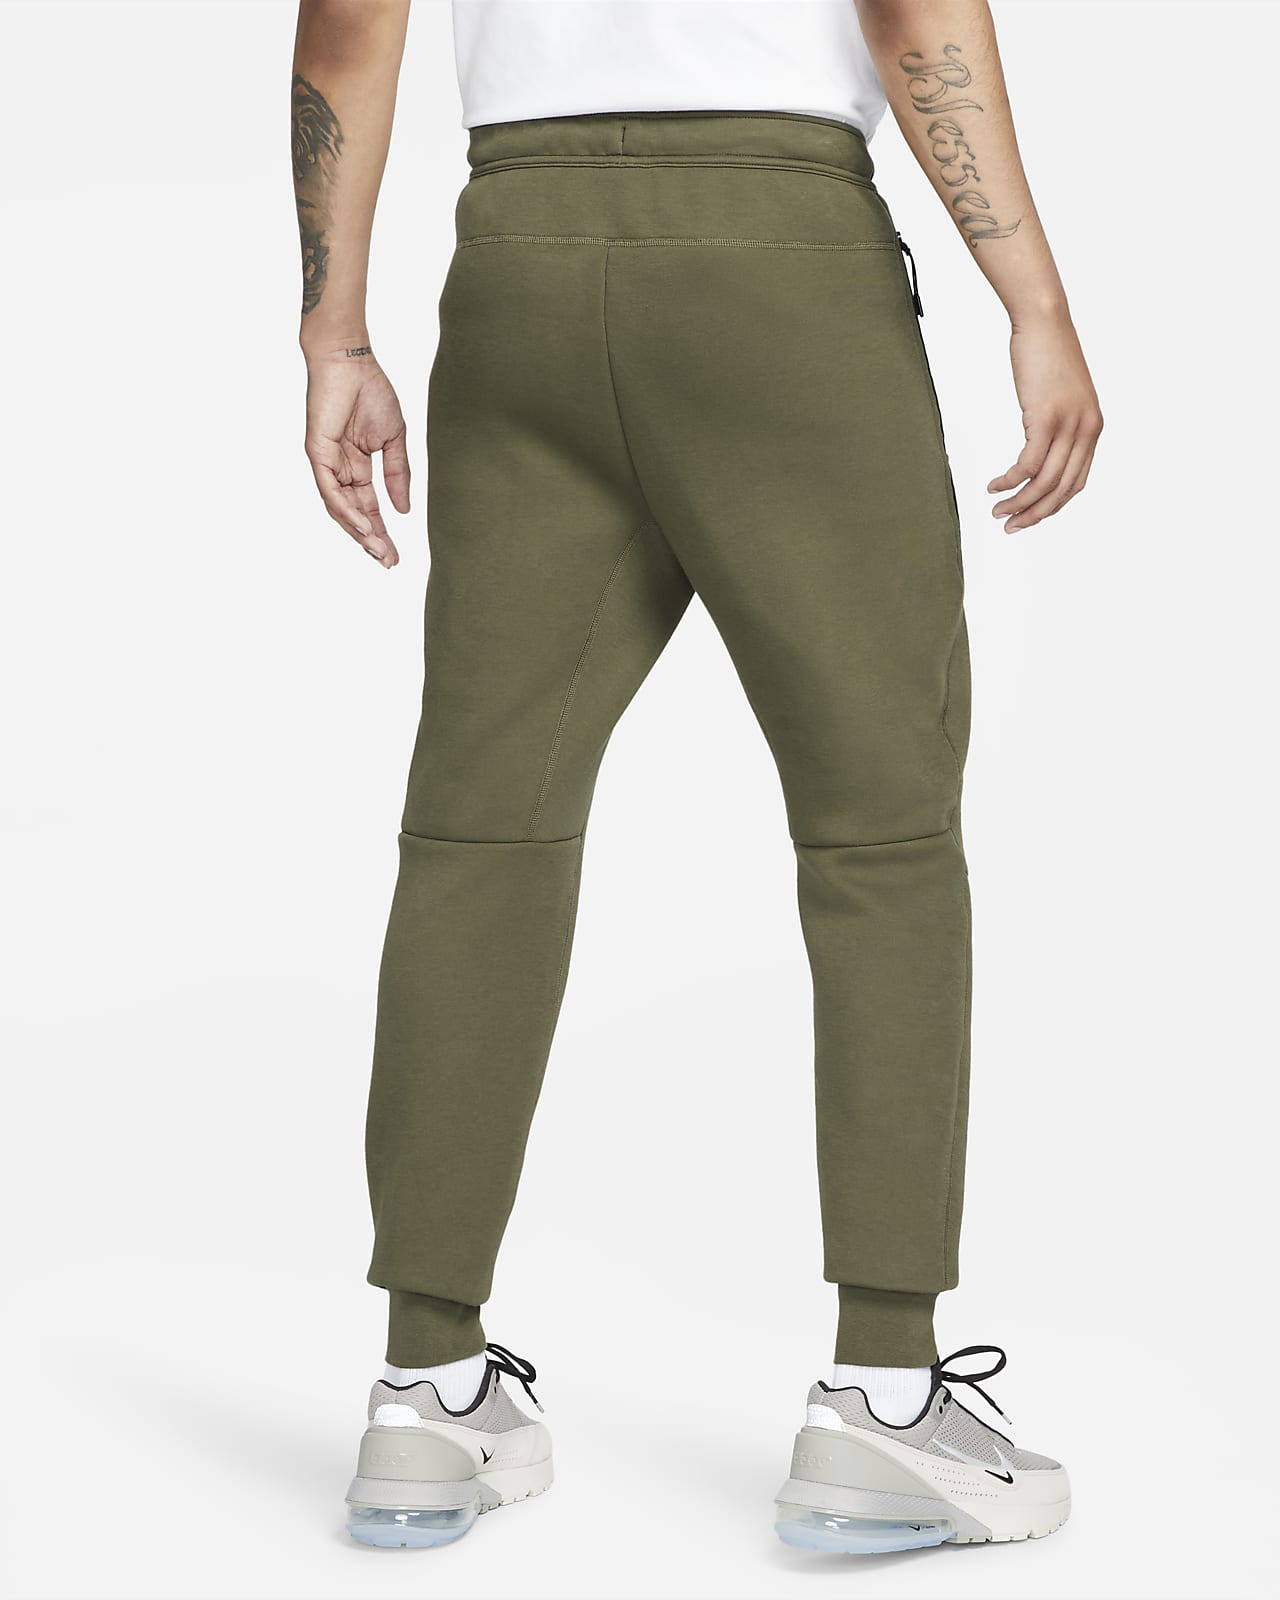 Nike Sportswear Tech Fleece Pants – Laced.